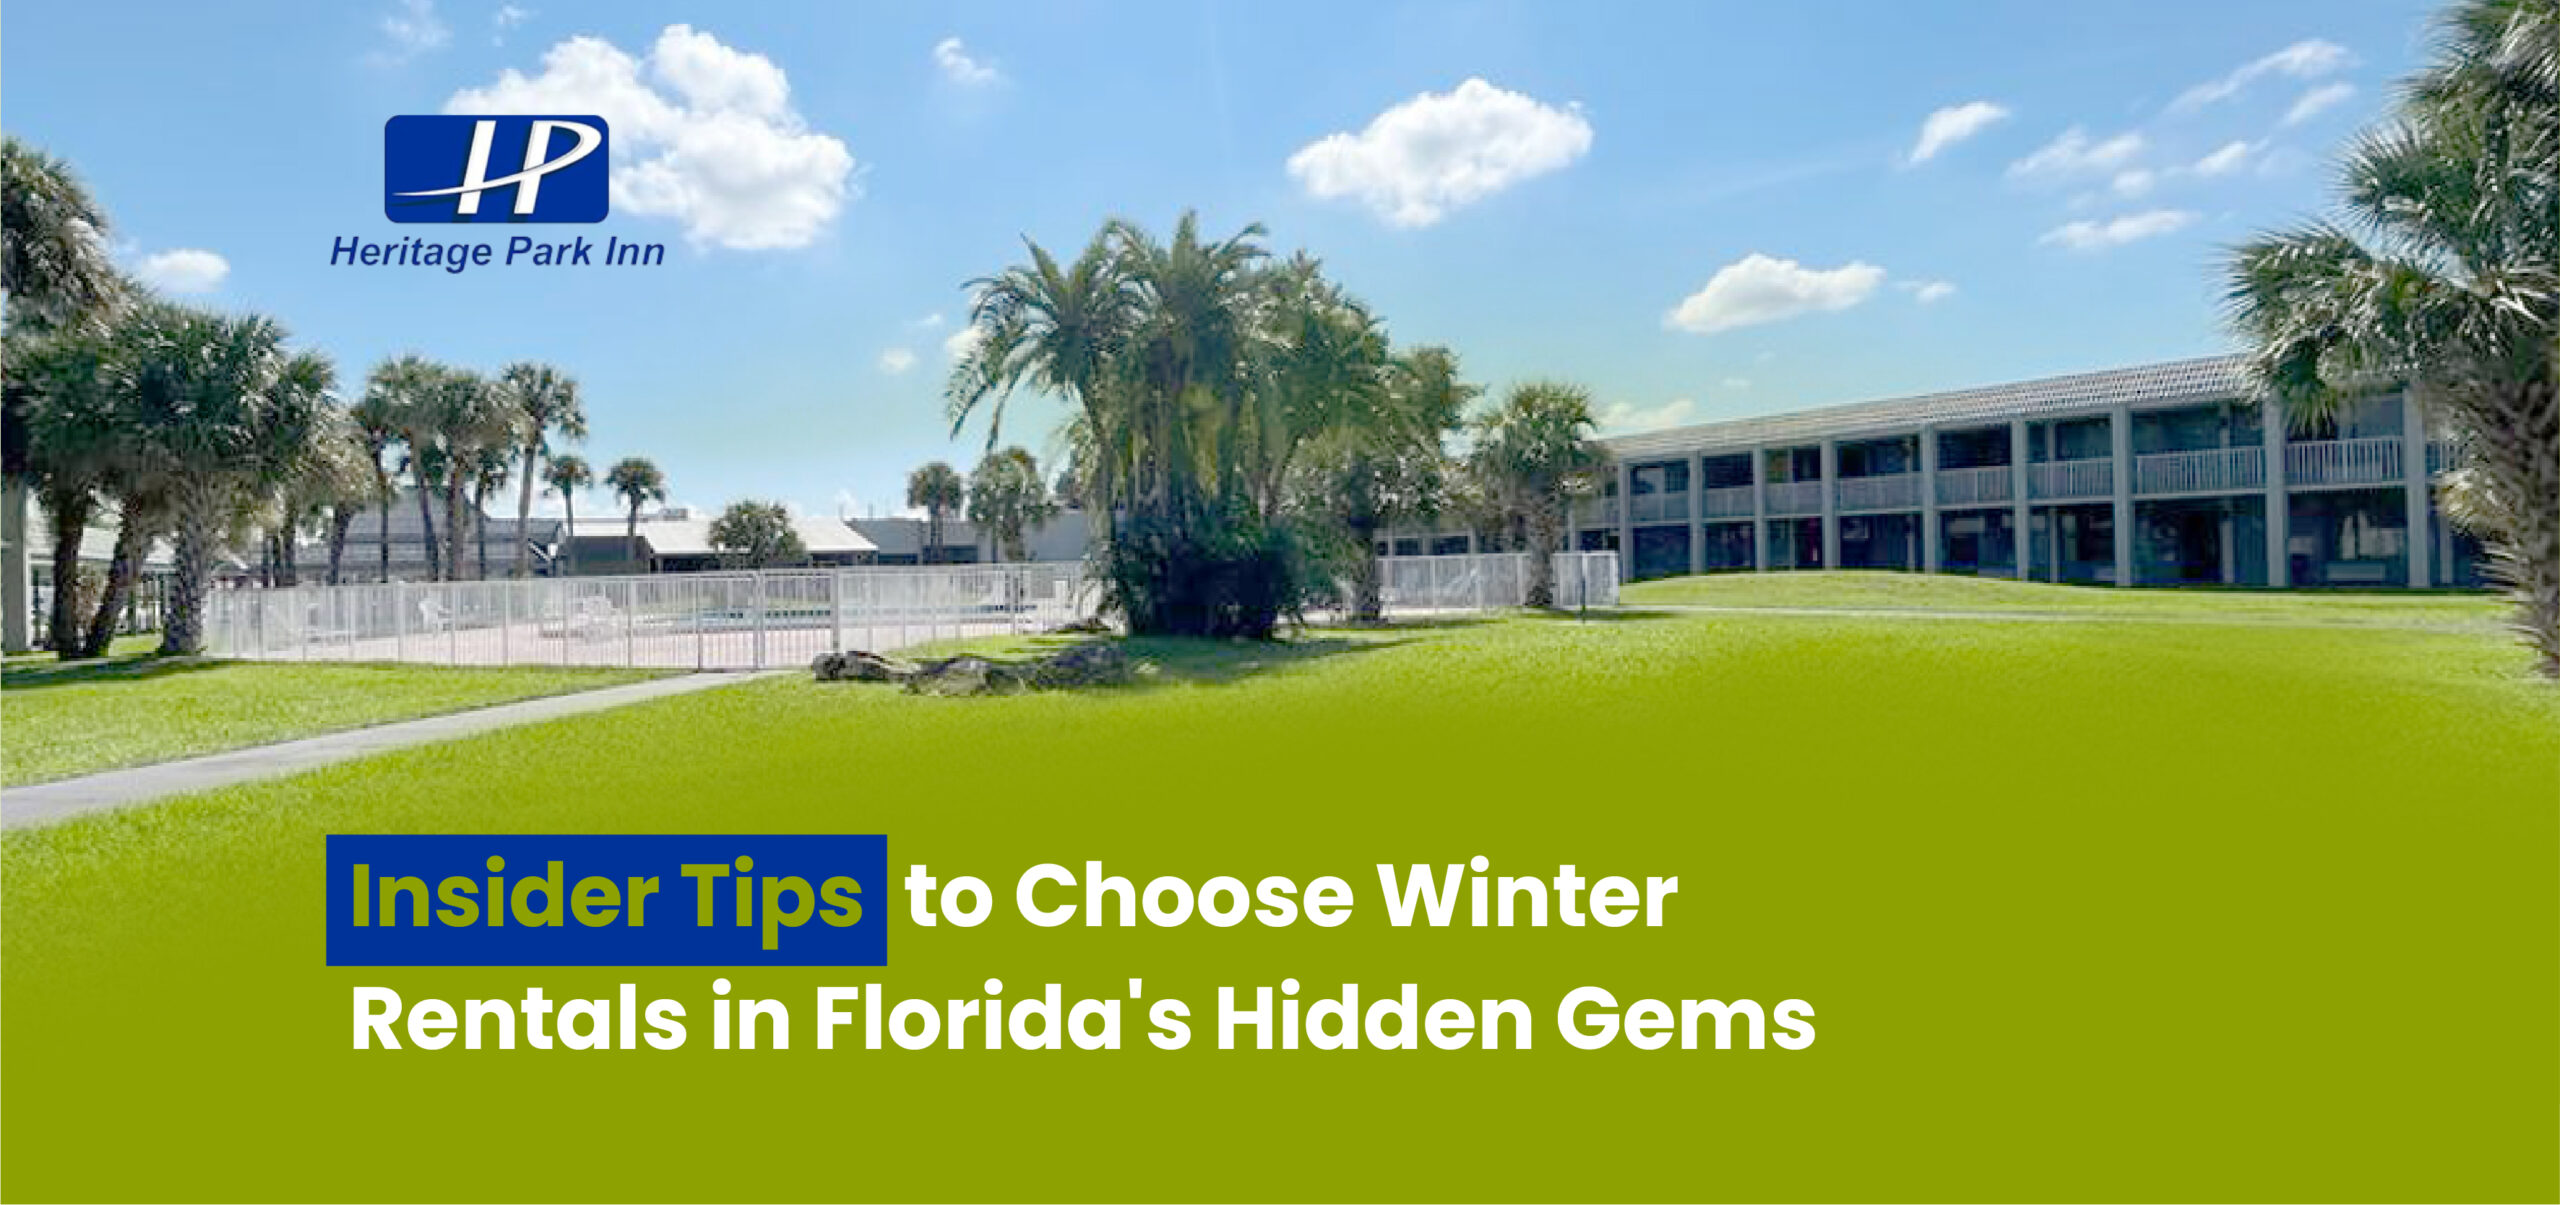 Tips to Choose Winter Rentals in Florida’s Hidden Gems